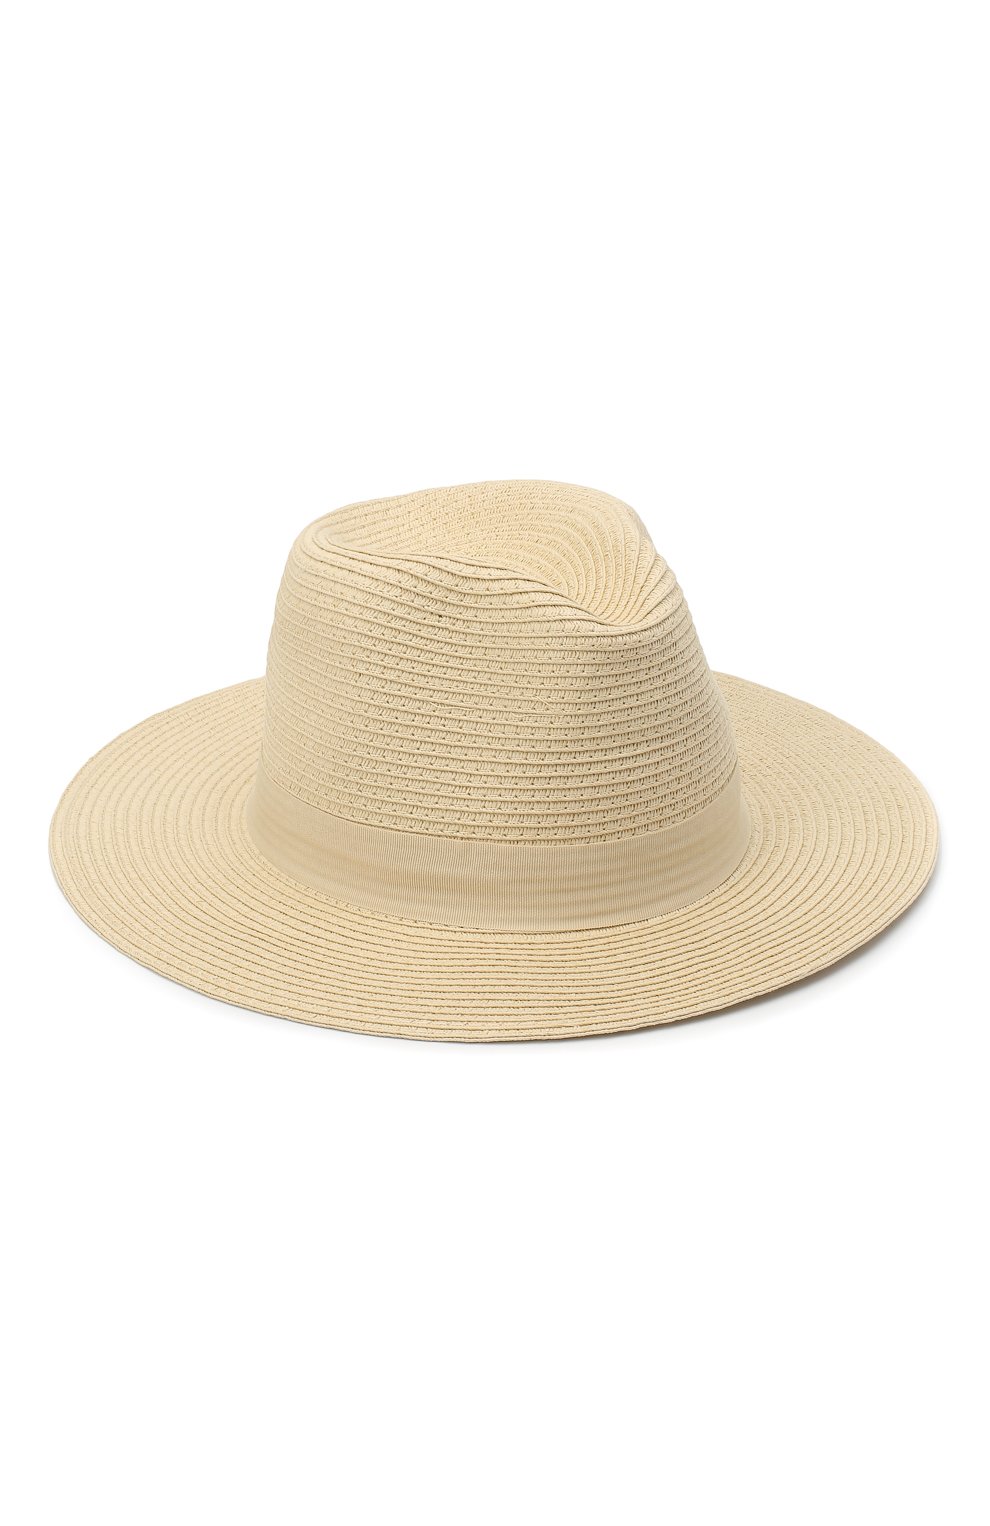 Женская шляпа fedora MELISSA ODABASH кремвого цвета, арт. FED0RA | Фото 1 (Материал: Растительное волокно)